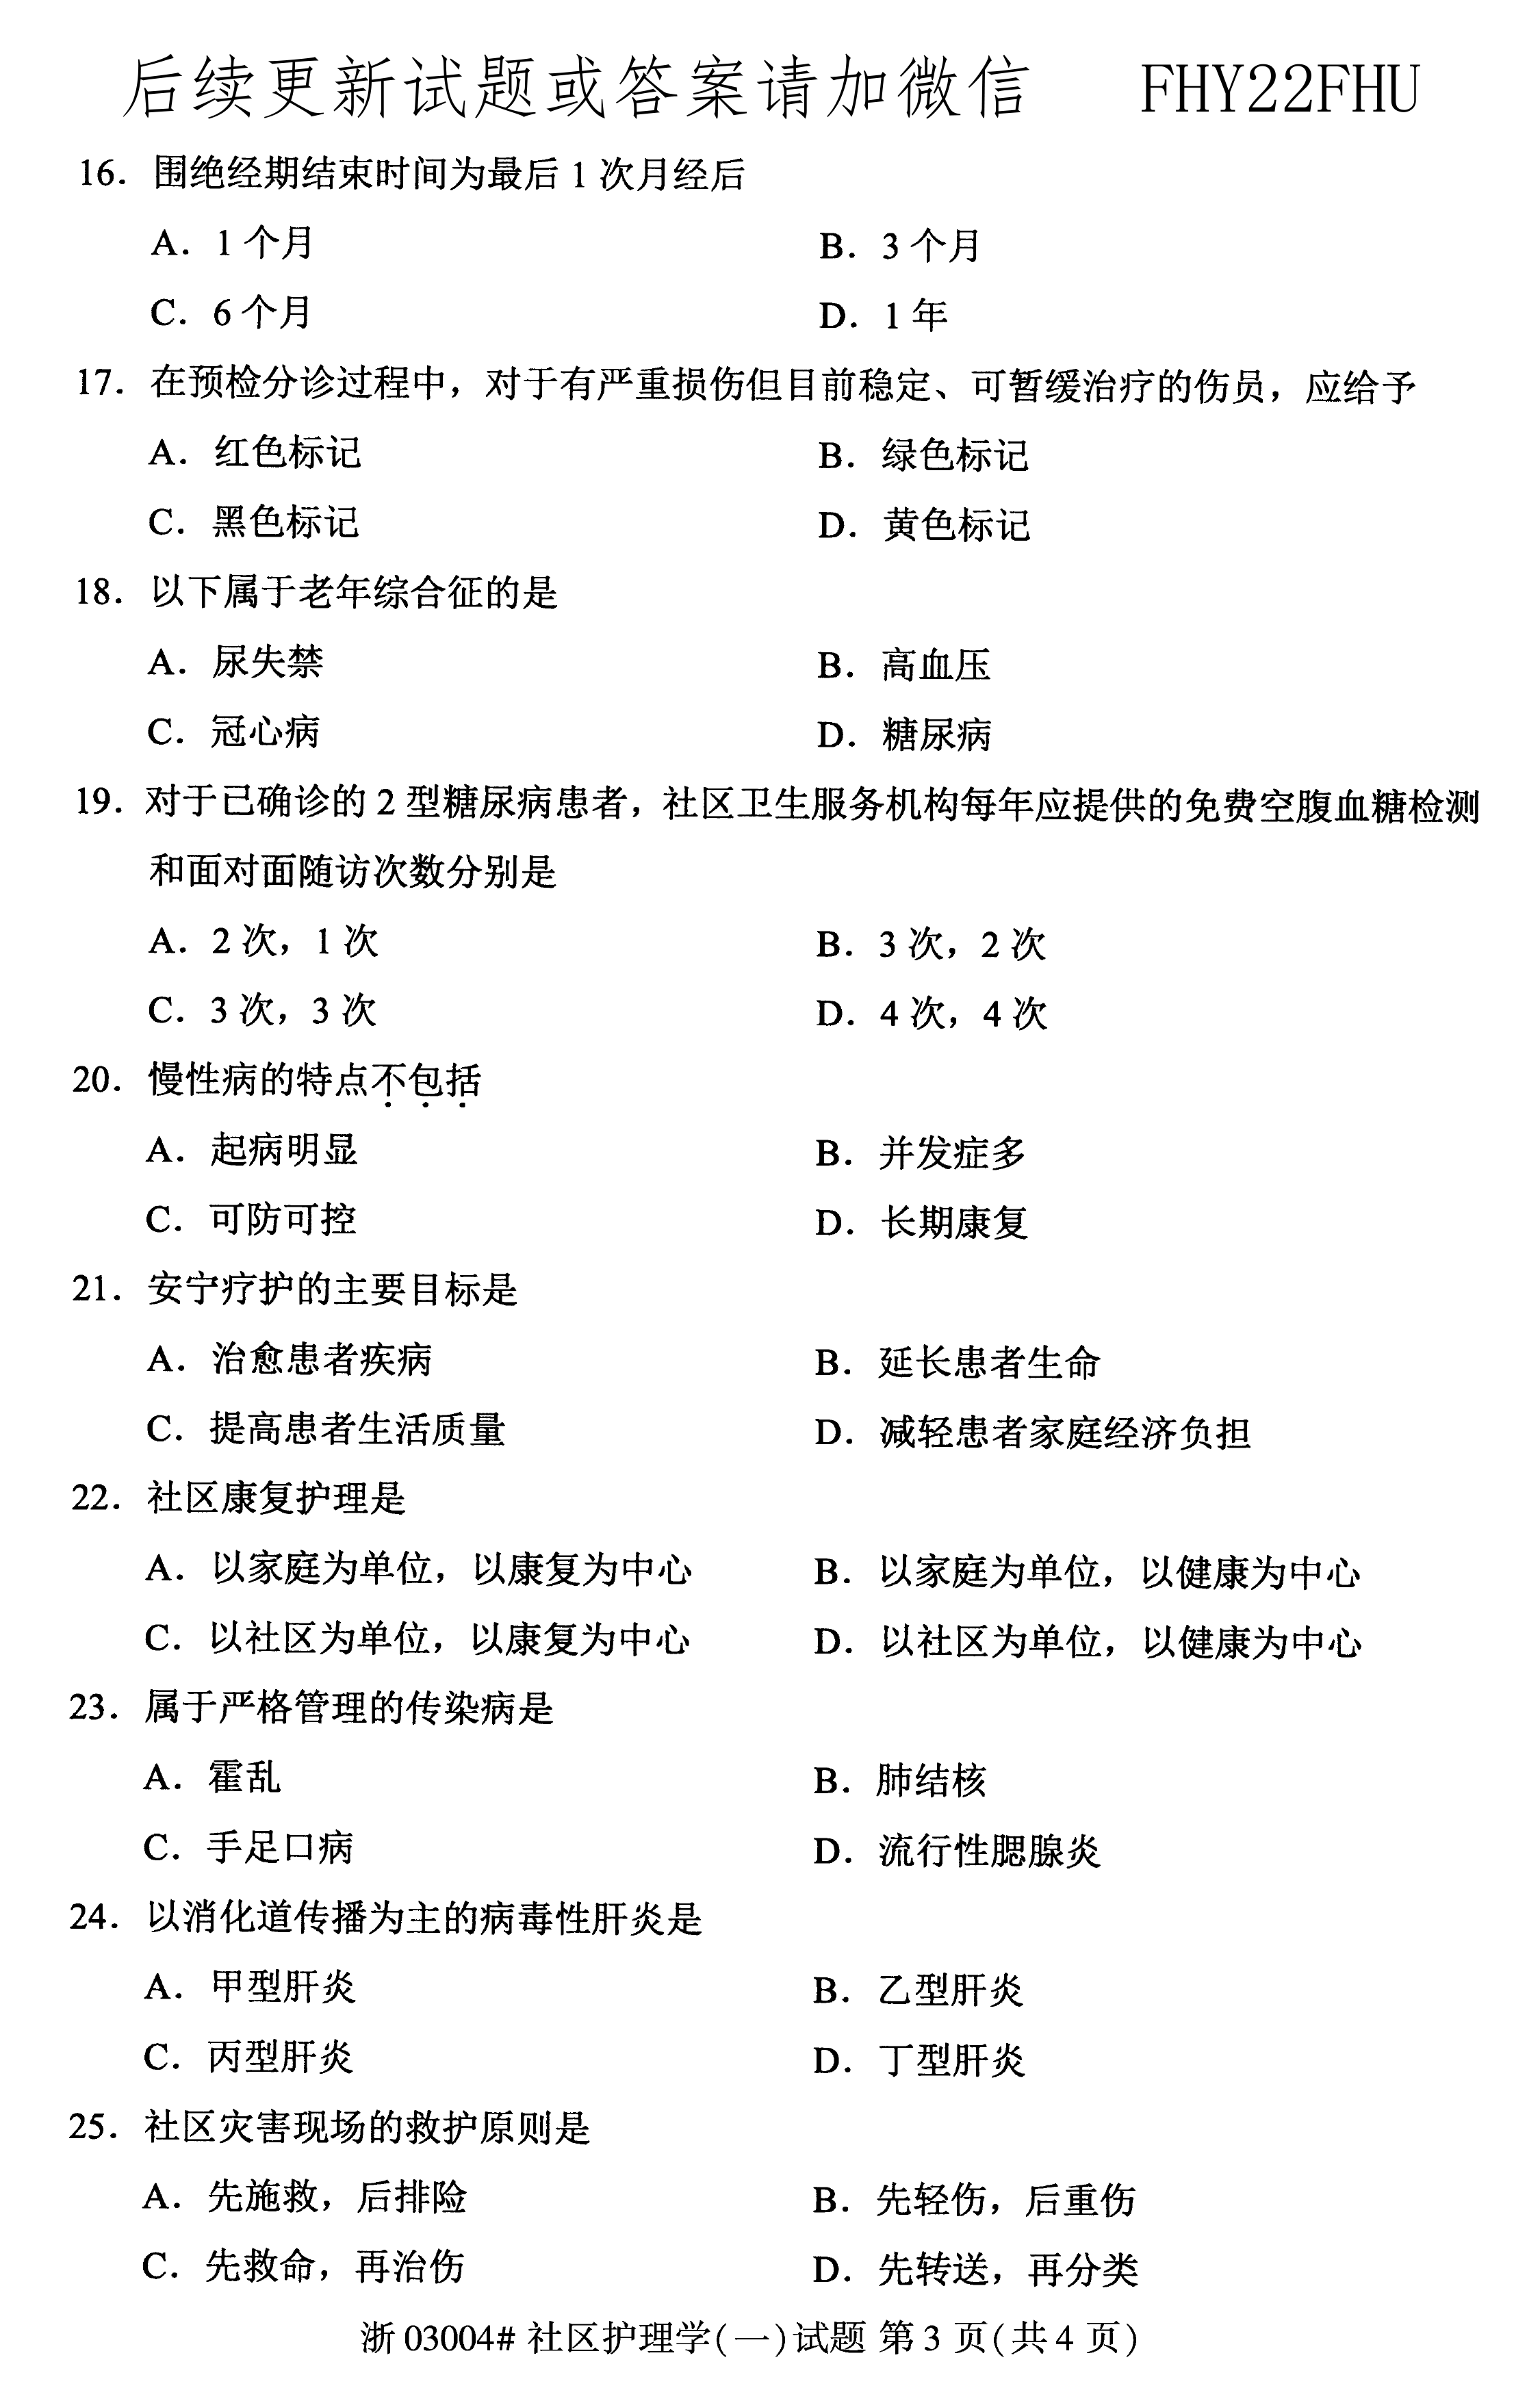 2020年08月贵州省自学考试03004社区护理学一试题及答案